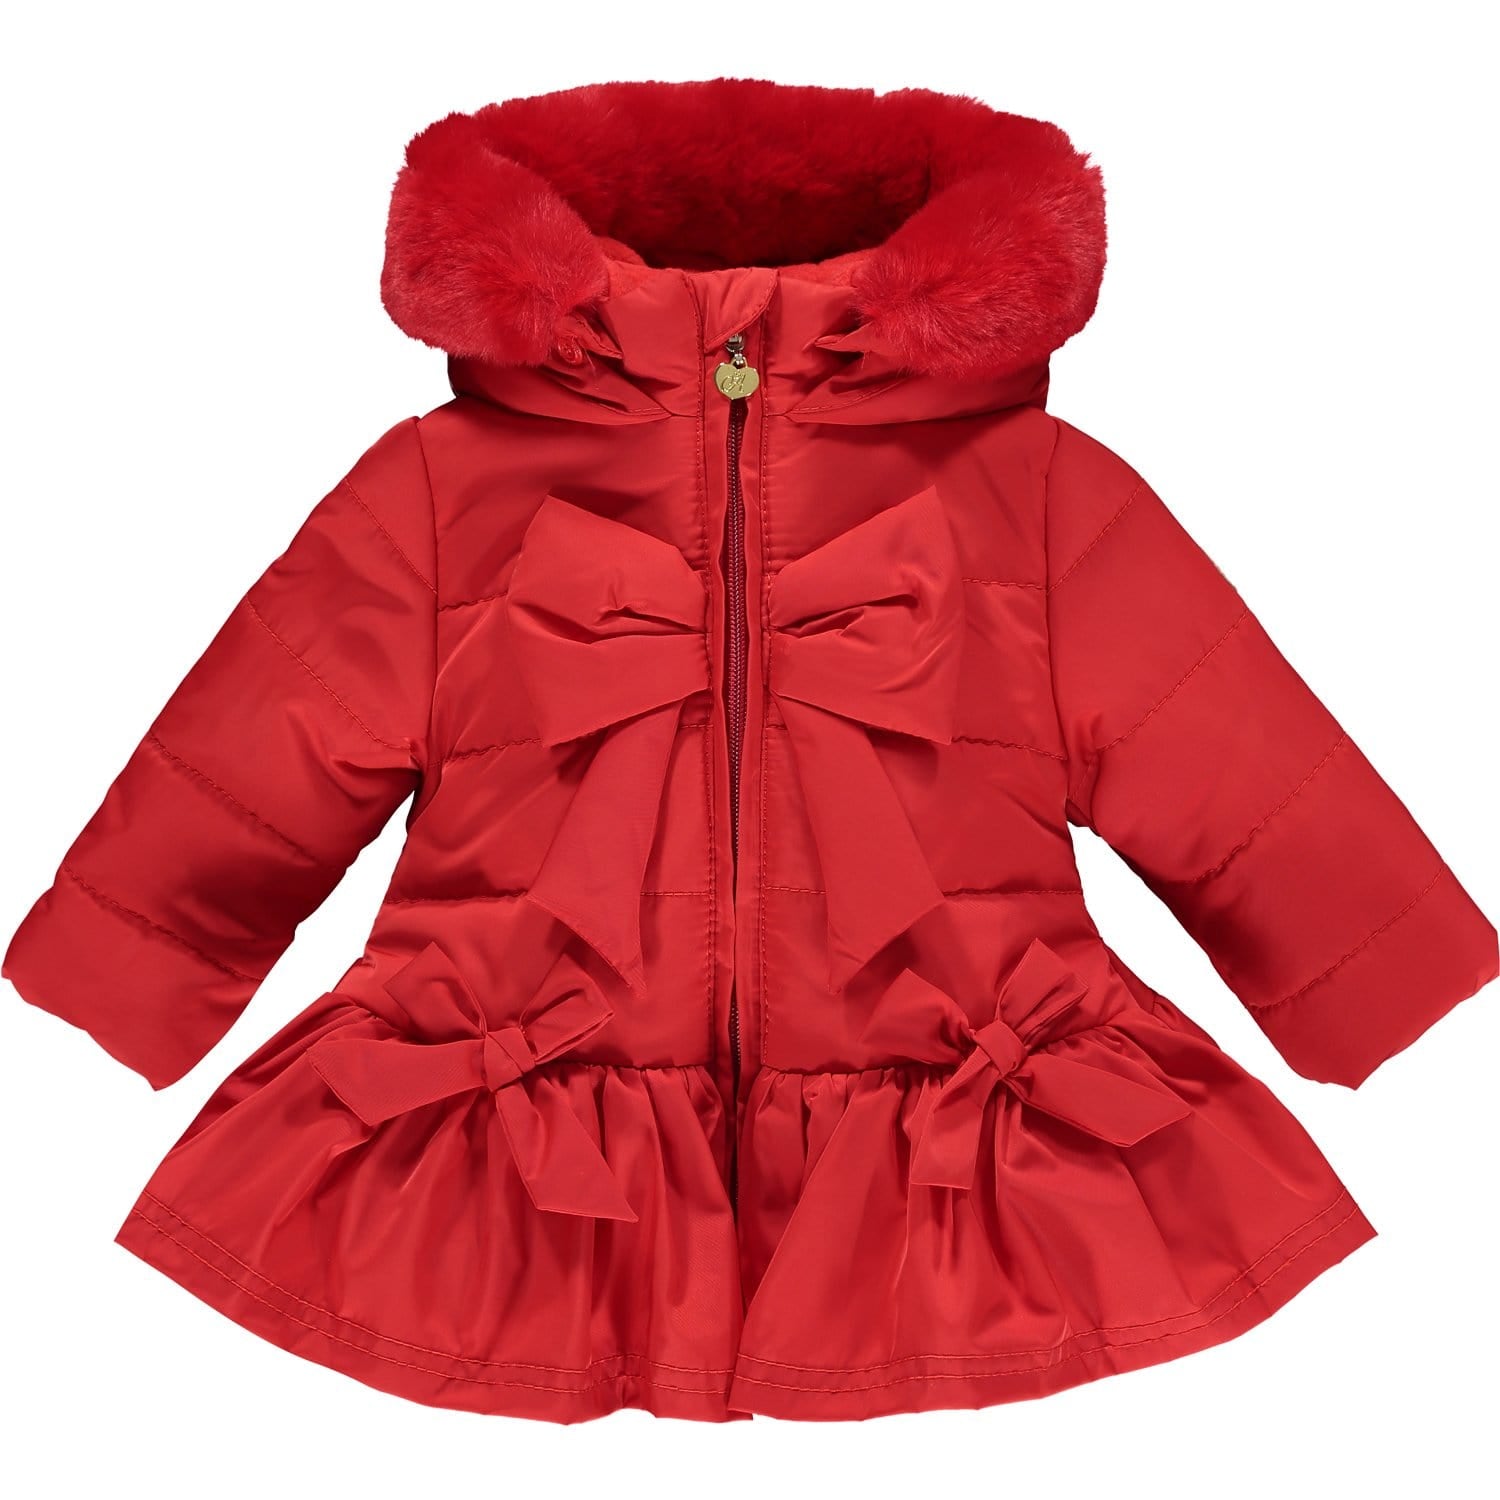 LITTLE A - Bow Faux Fur Trim Jacket - Red